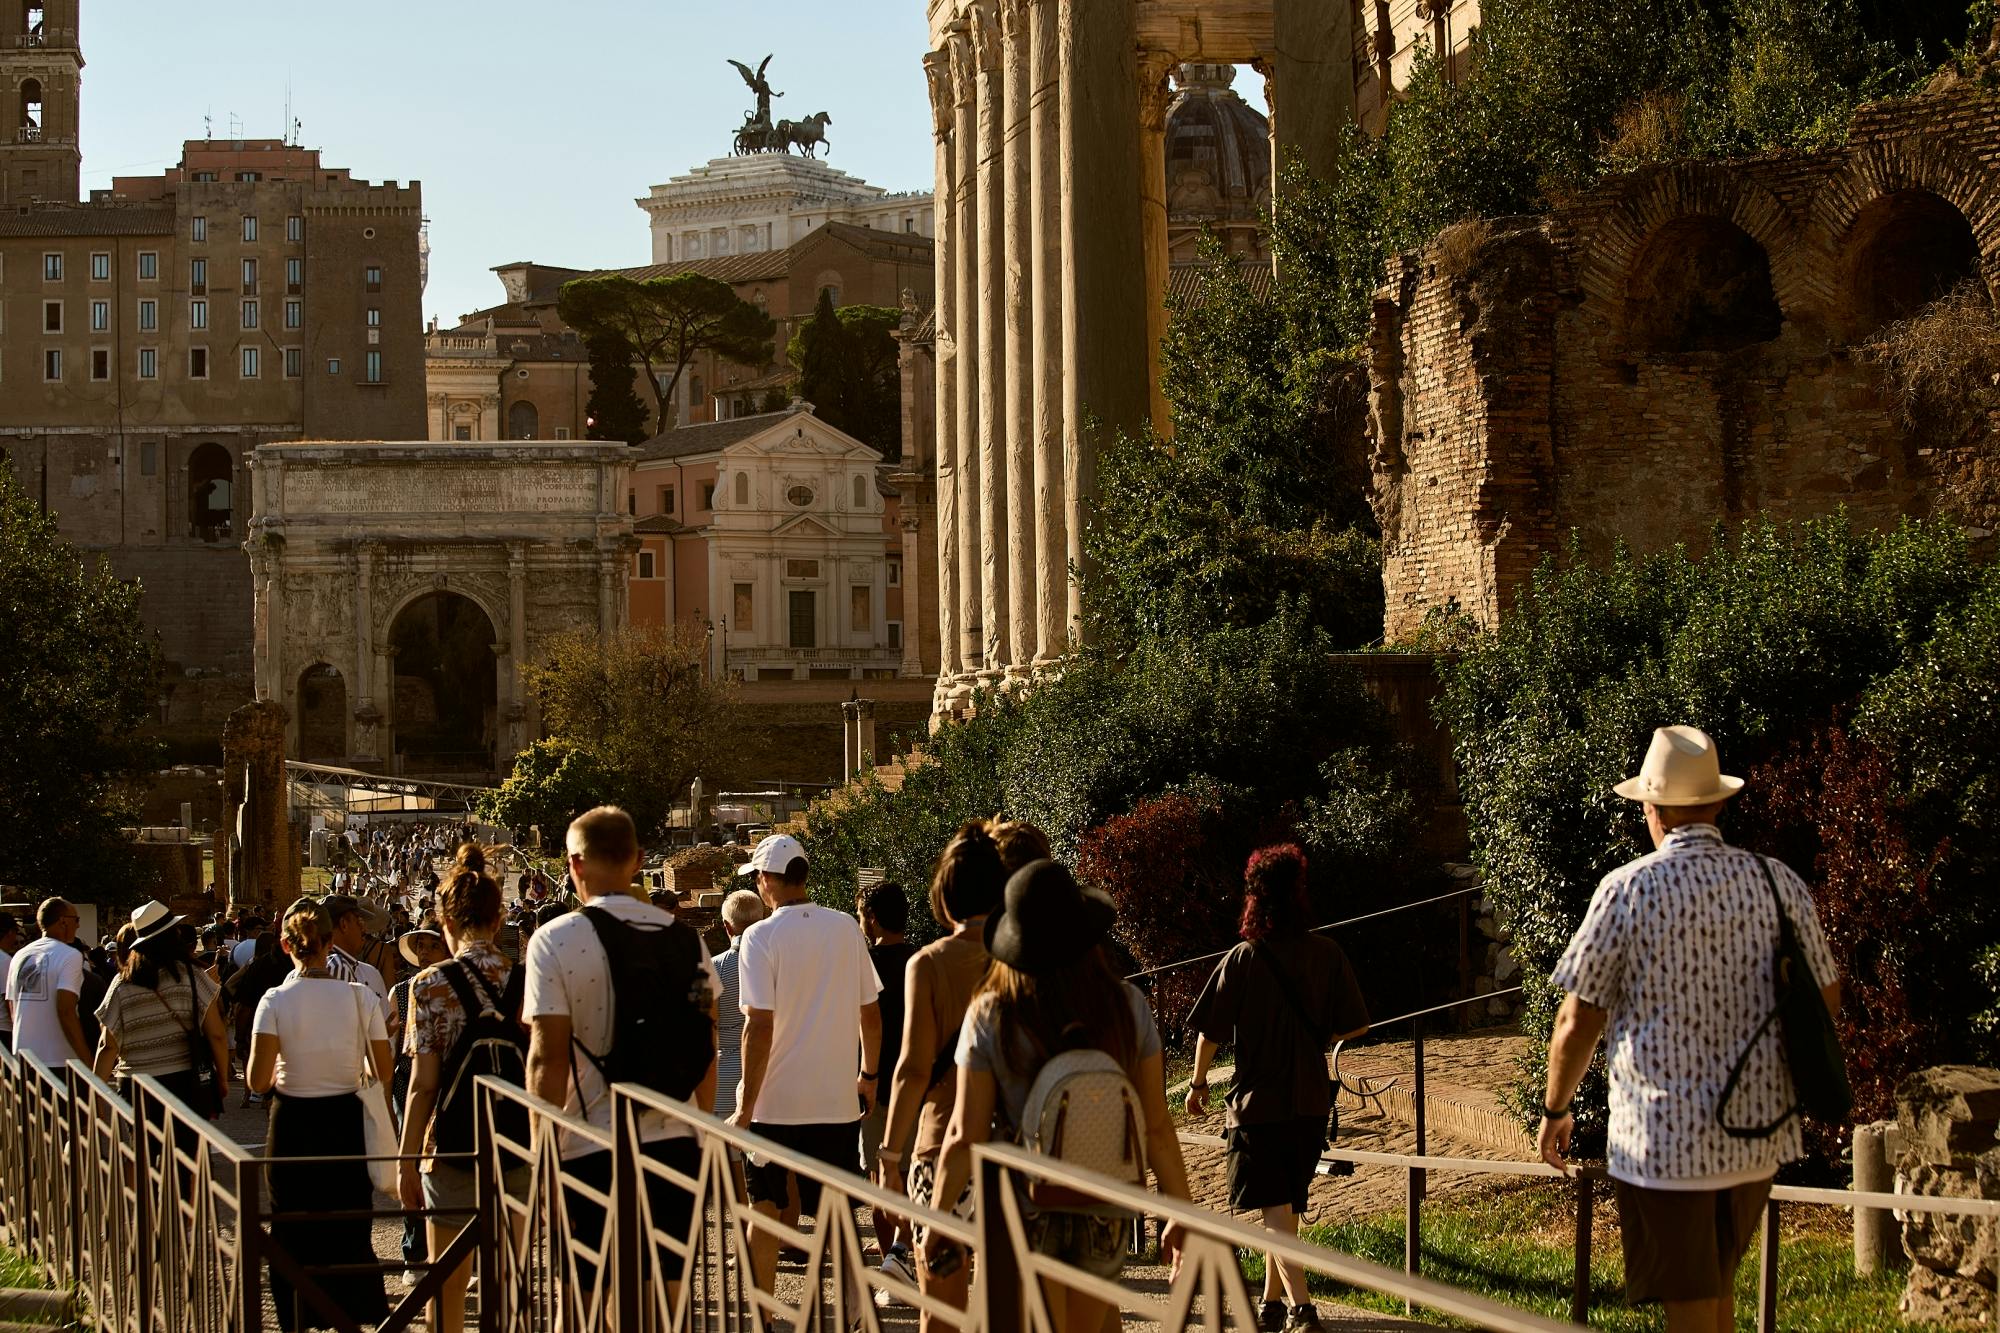 Visita guiada al Coliseo en grupos pequeños con arena y foro romano